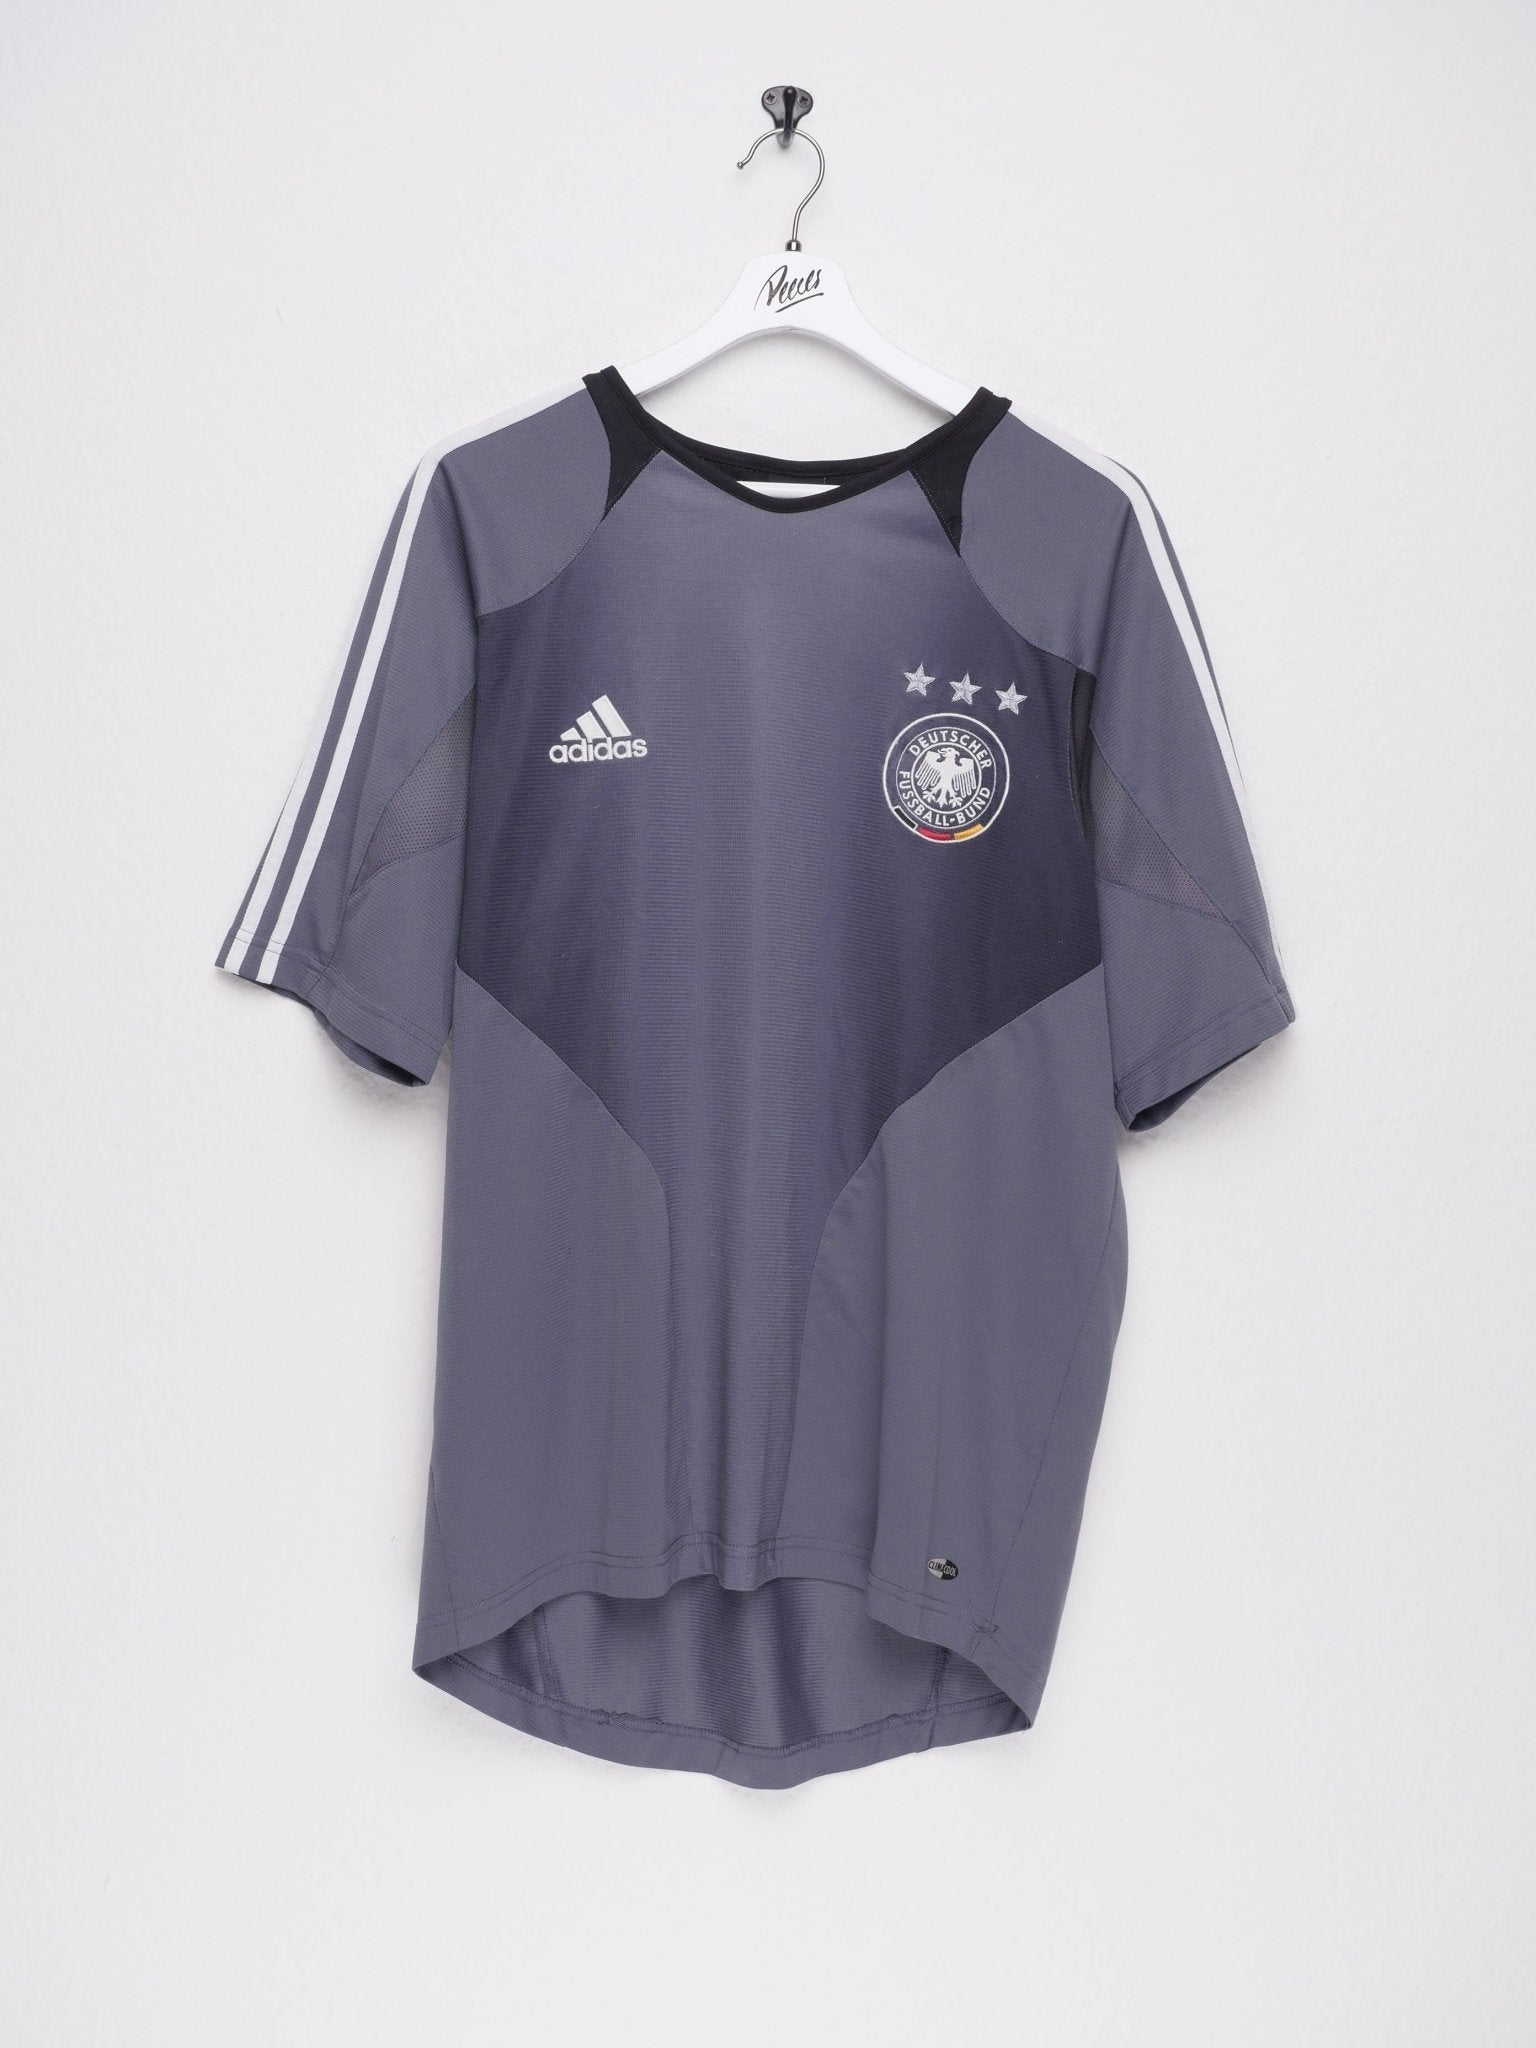 adidas embroidered Logo 'Deutscher Fußball-Bund' grey Jersey Shirt - Peeces